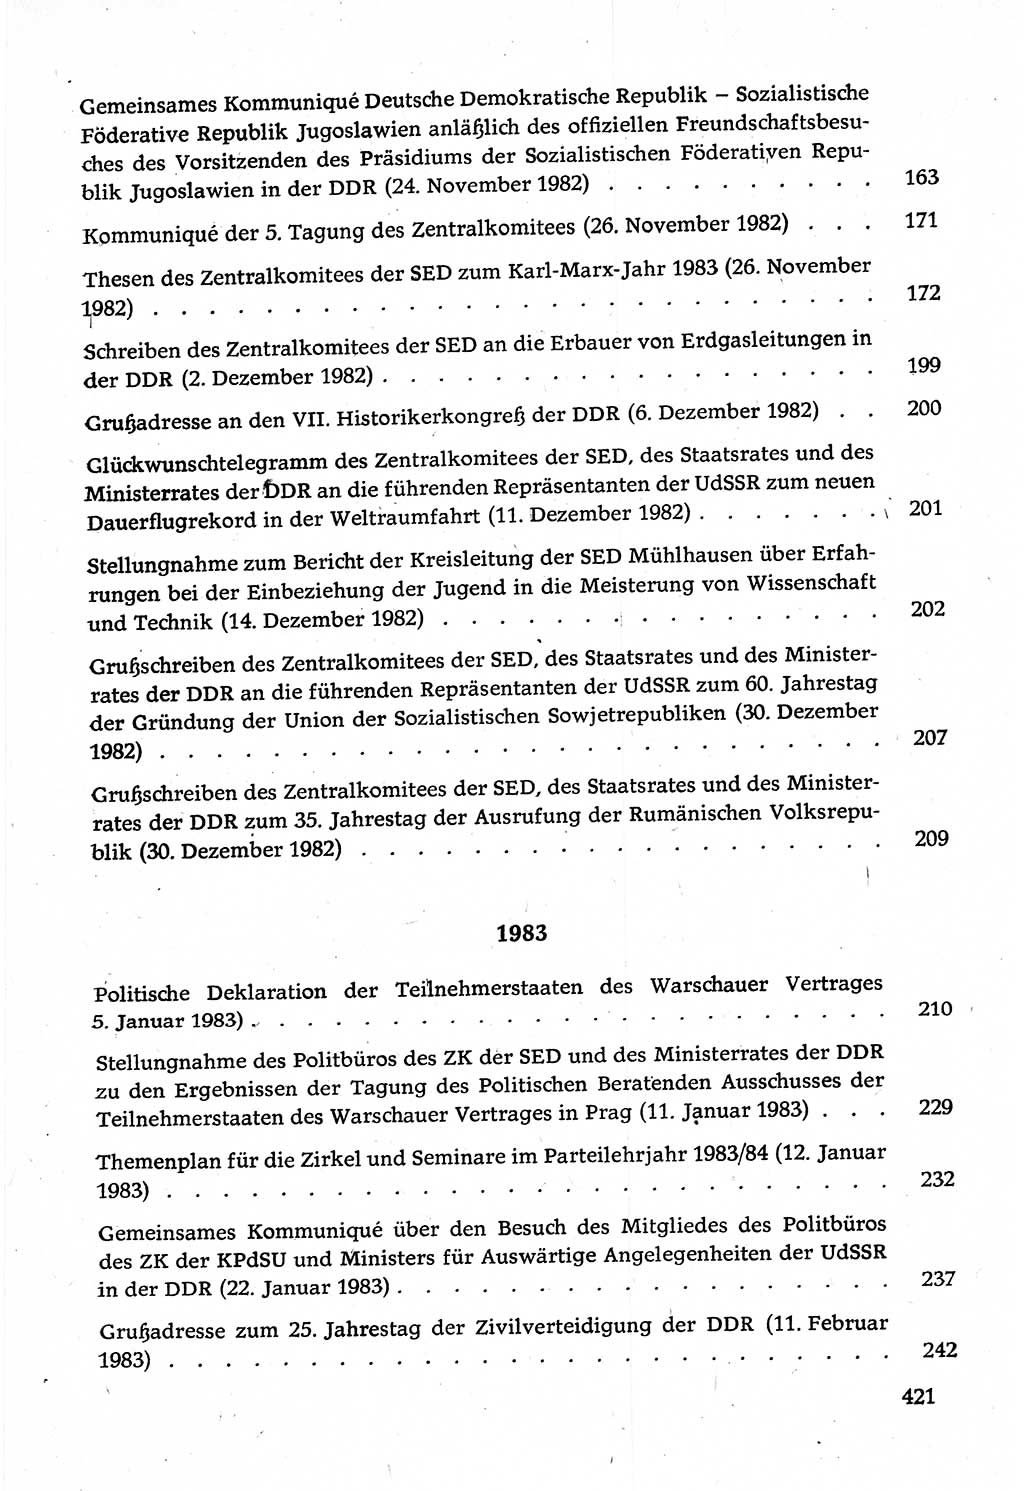 Dokumente der Sozialistischen Einheitspartei Deutschlands (SED) [Deutsche Demokratische Republik (DDR)] 1982-1983, Seite 421 (Dok. SED DDR 1982-1983, S. 421)